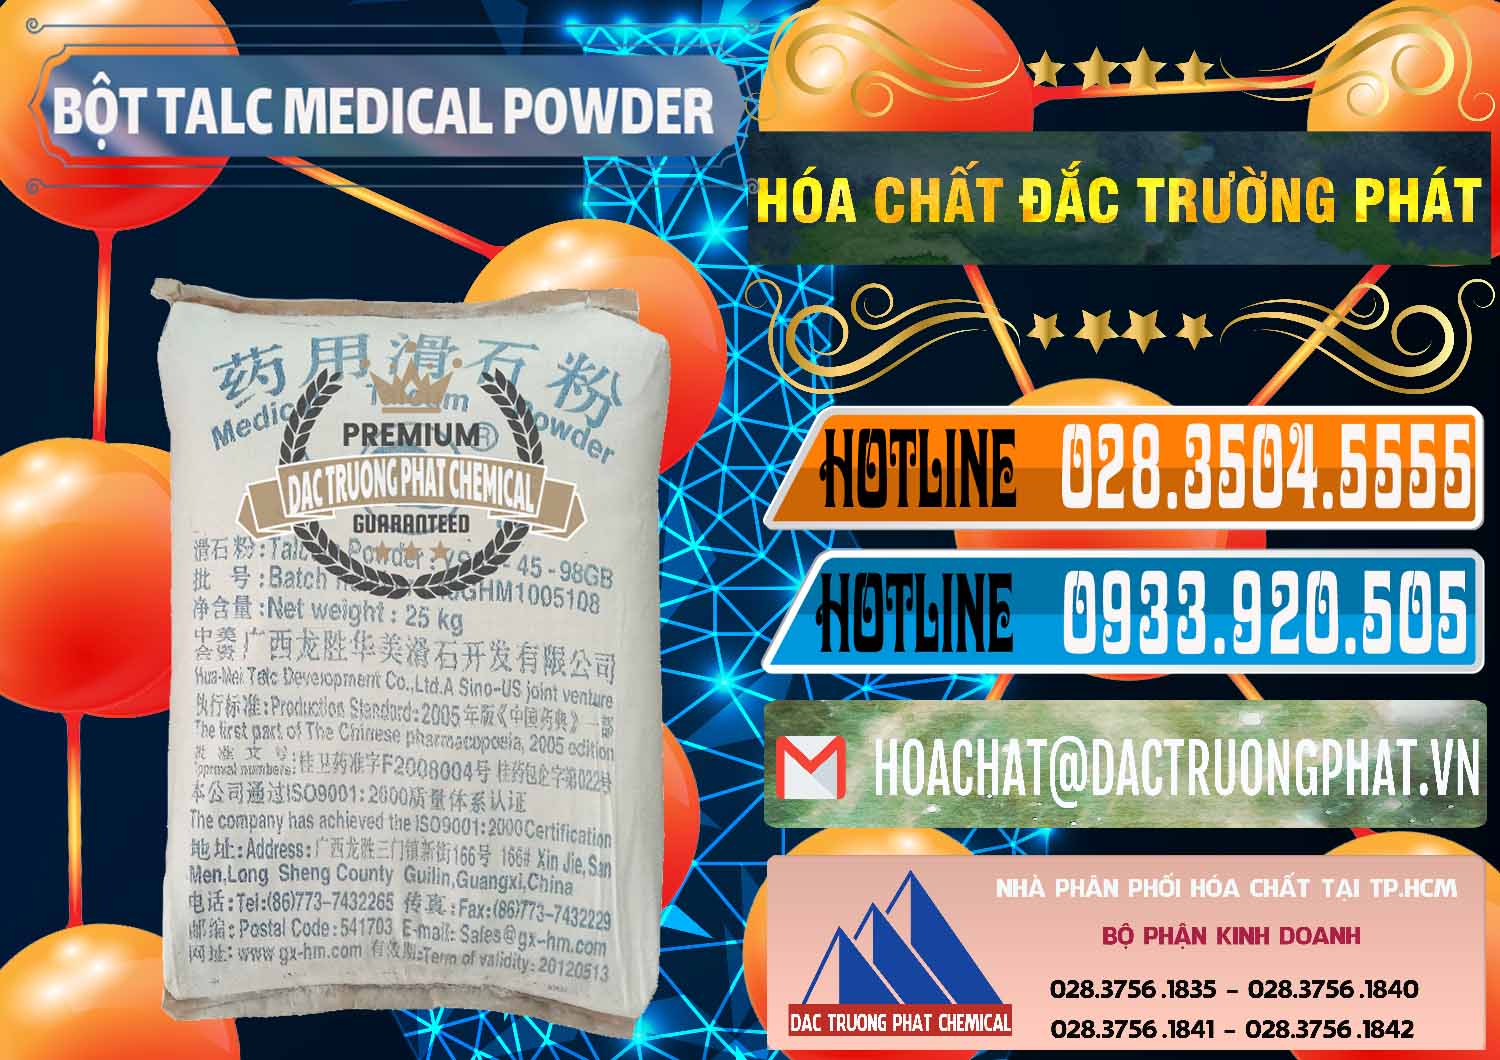 Phân phối - bán Bột Talc Medical Powder Trung Quốc China - 0036 - Cty chuyên cung ứng - phân phối hóa chất tại TP.HCM - stmp.net